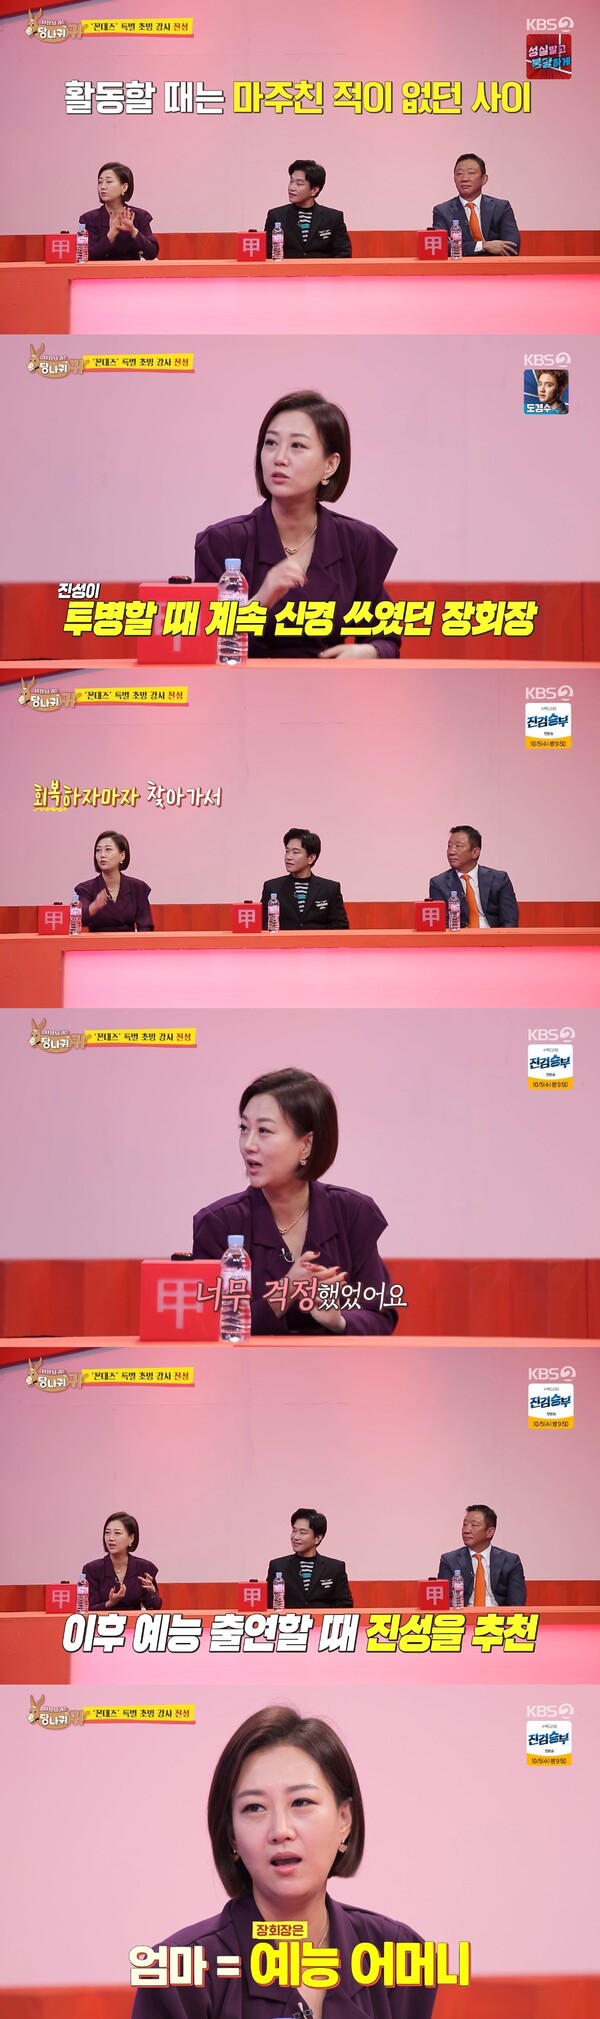 Jin-sung chama Jang Yoon Jung Om (= a mãe do entretenimento).  Fonte: KBS 2TV 'As orelhas do presidente são orelhas de burro'